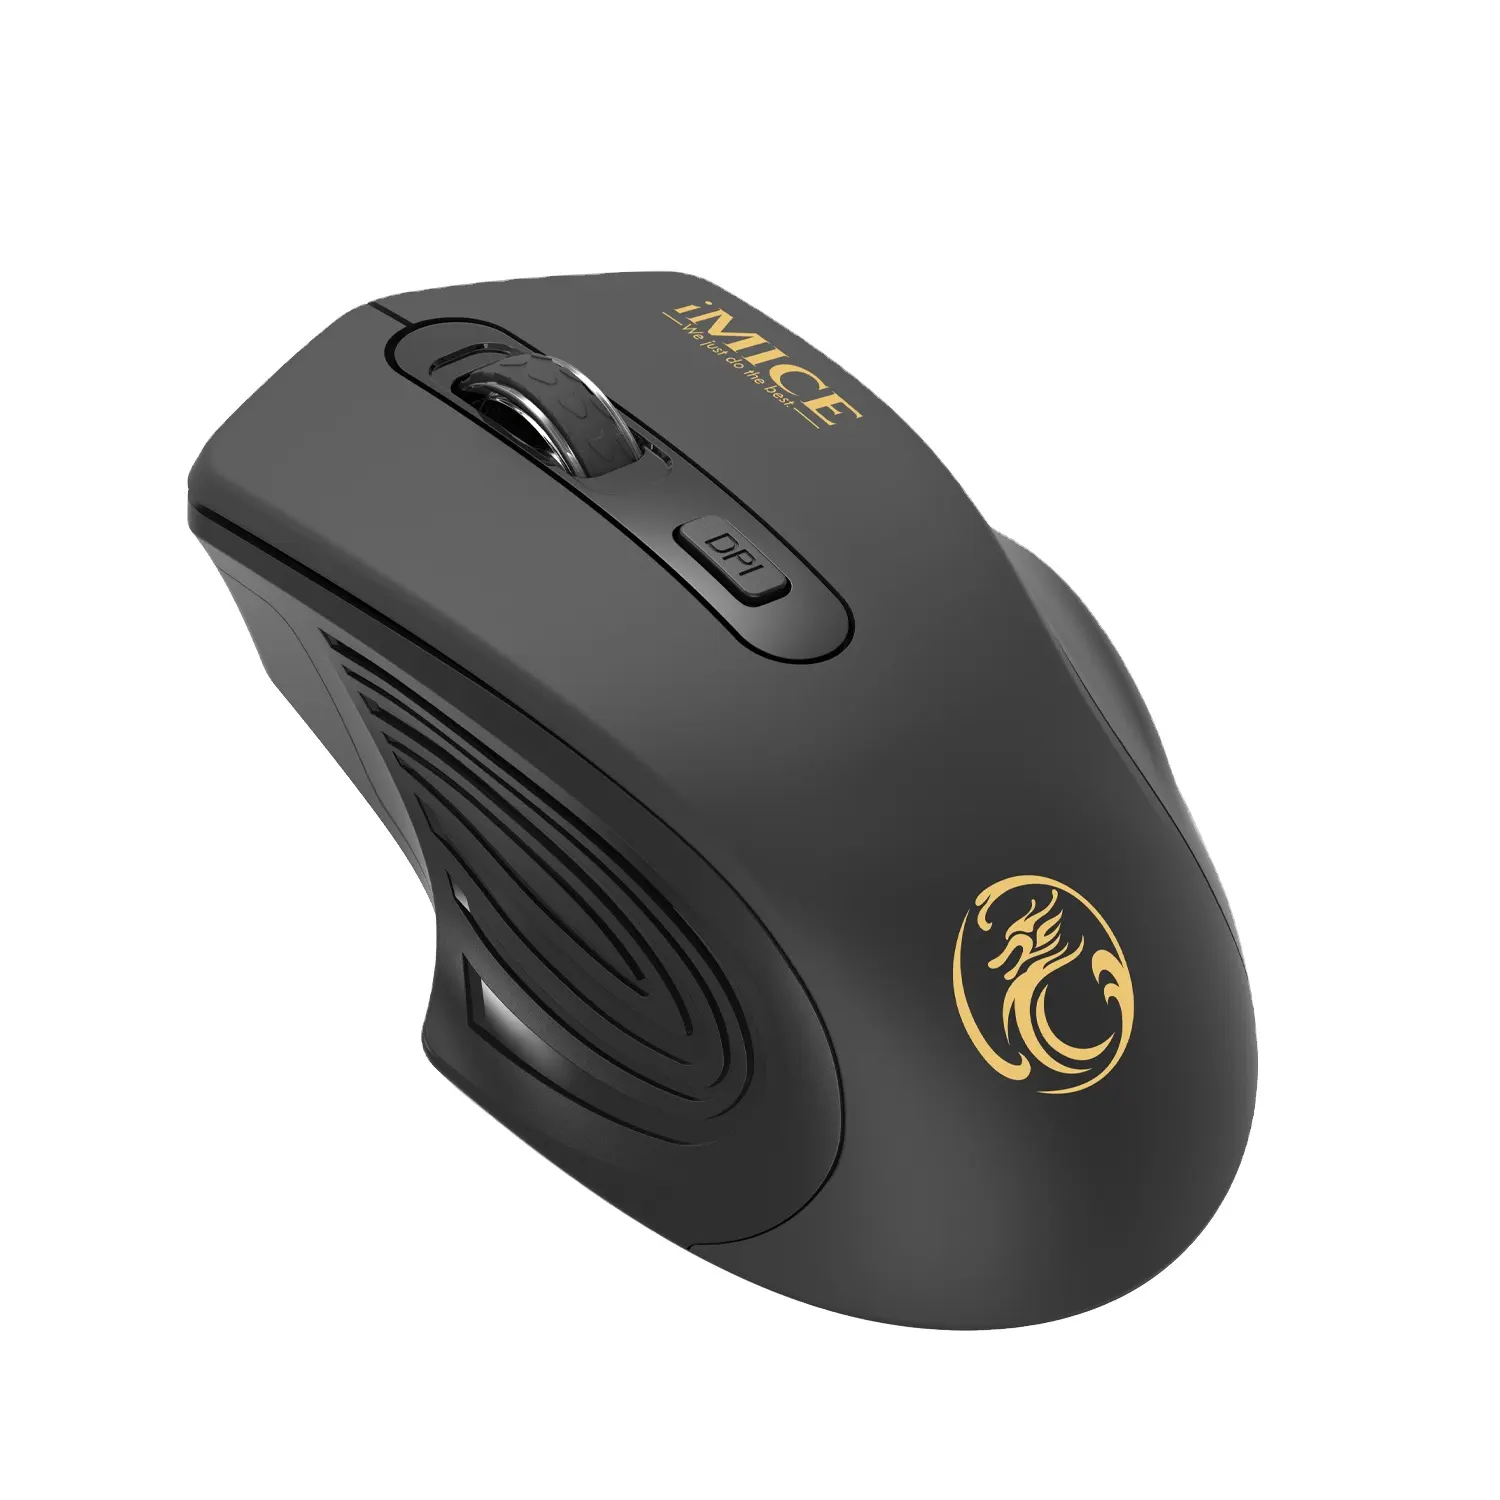 IMICE G1800 Mouse optik nirkabel, Mouse nirkabel 2.4Ghz untuk penggunaan kantor rumah dengan dongle Usb